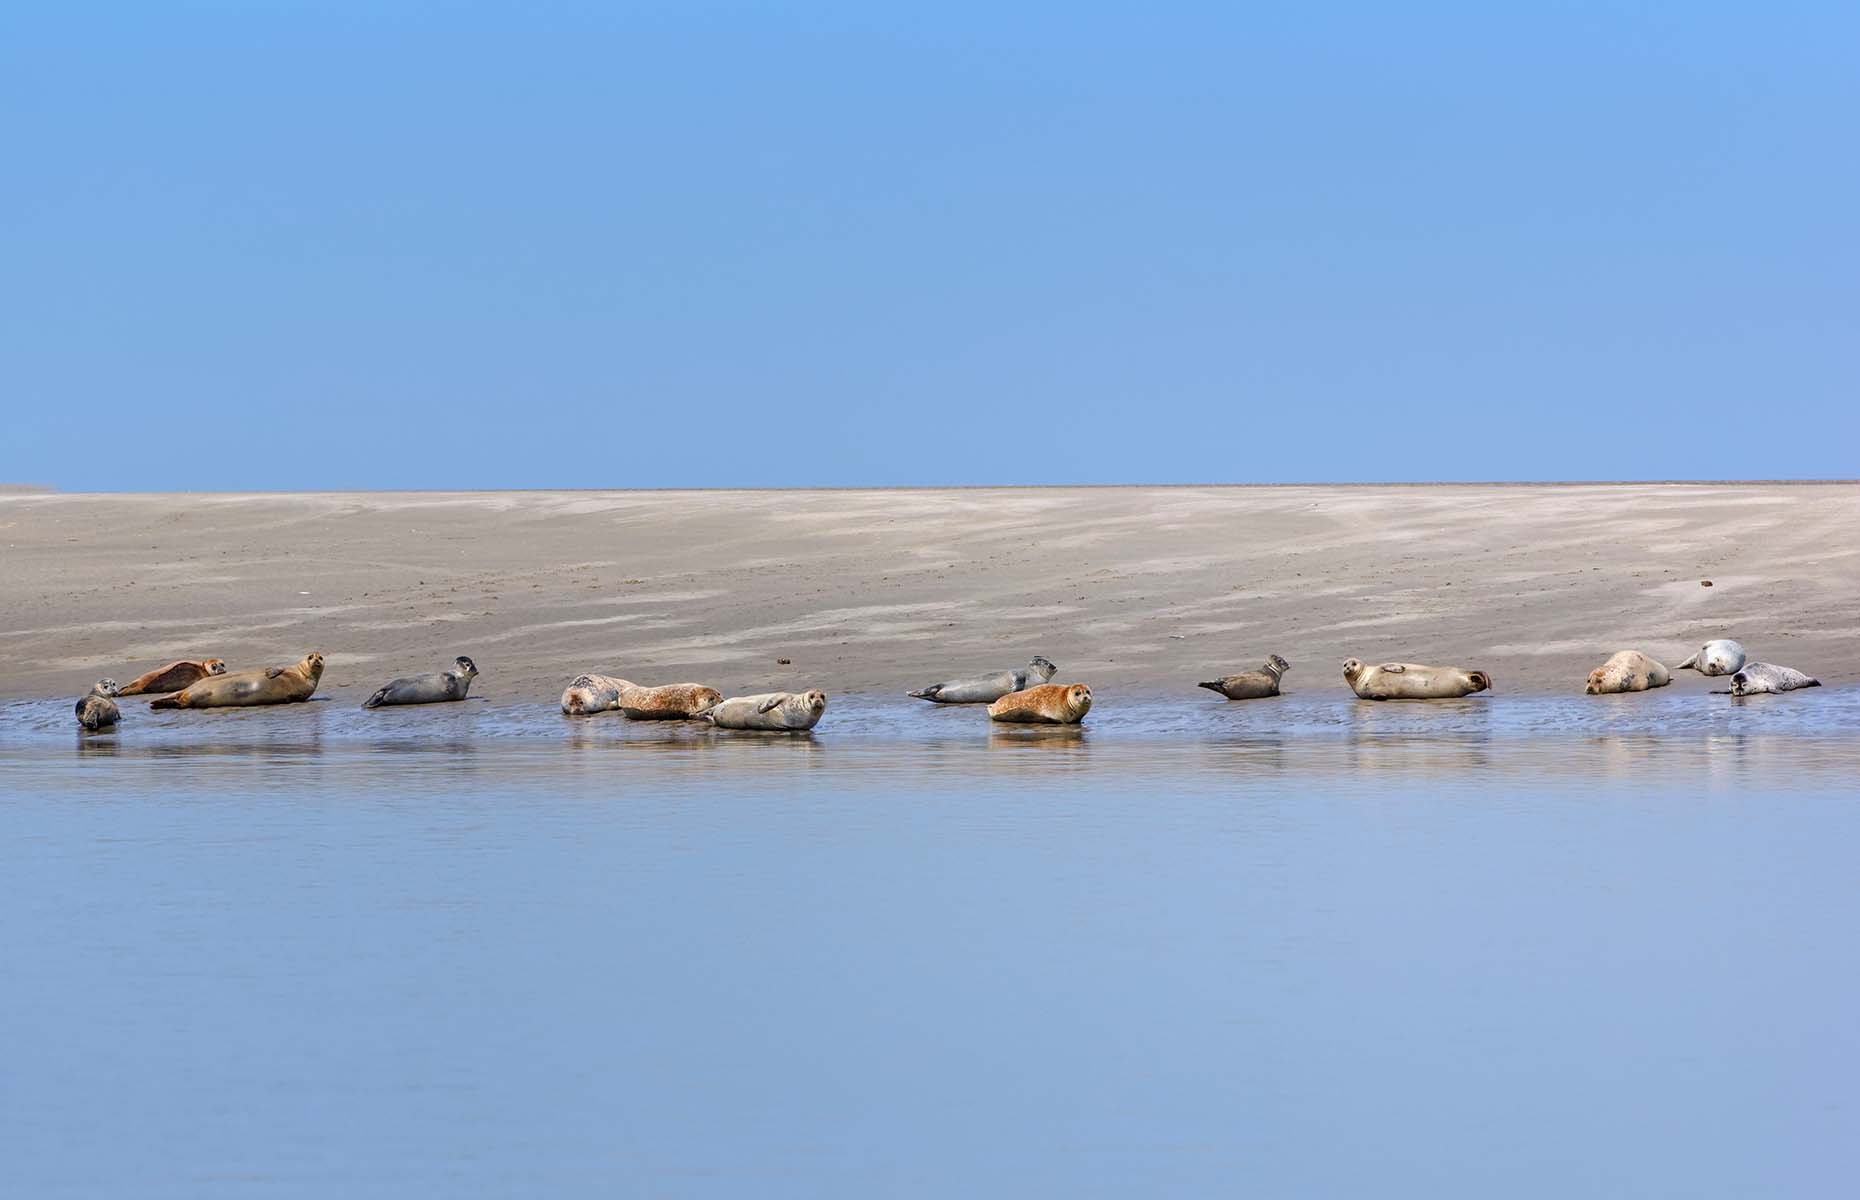 Seals in northern France (Image: bensliman hassan/Shutterstock)